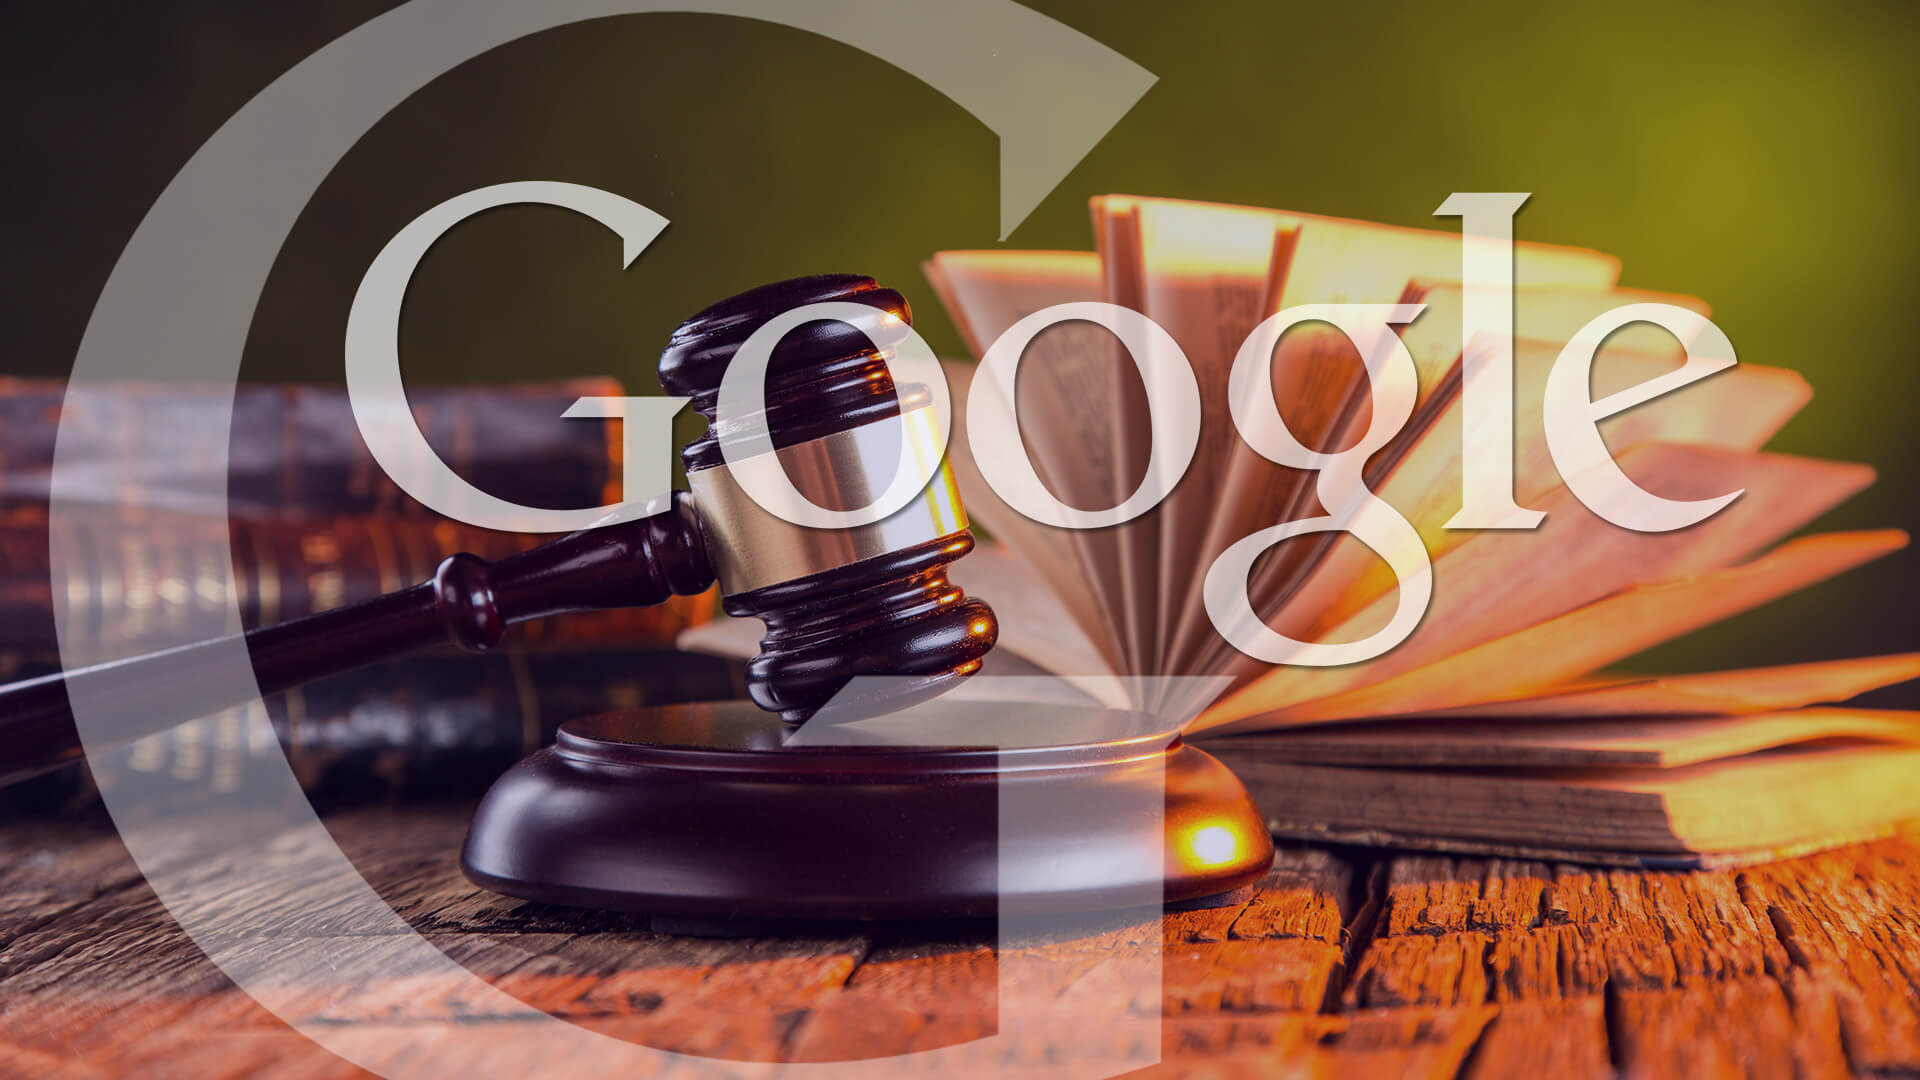 Come si fa ad esercitare il diritto all’oblio in Google?